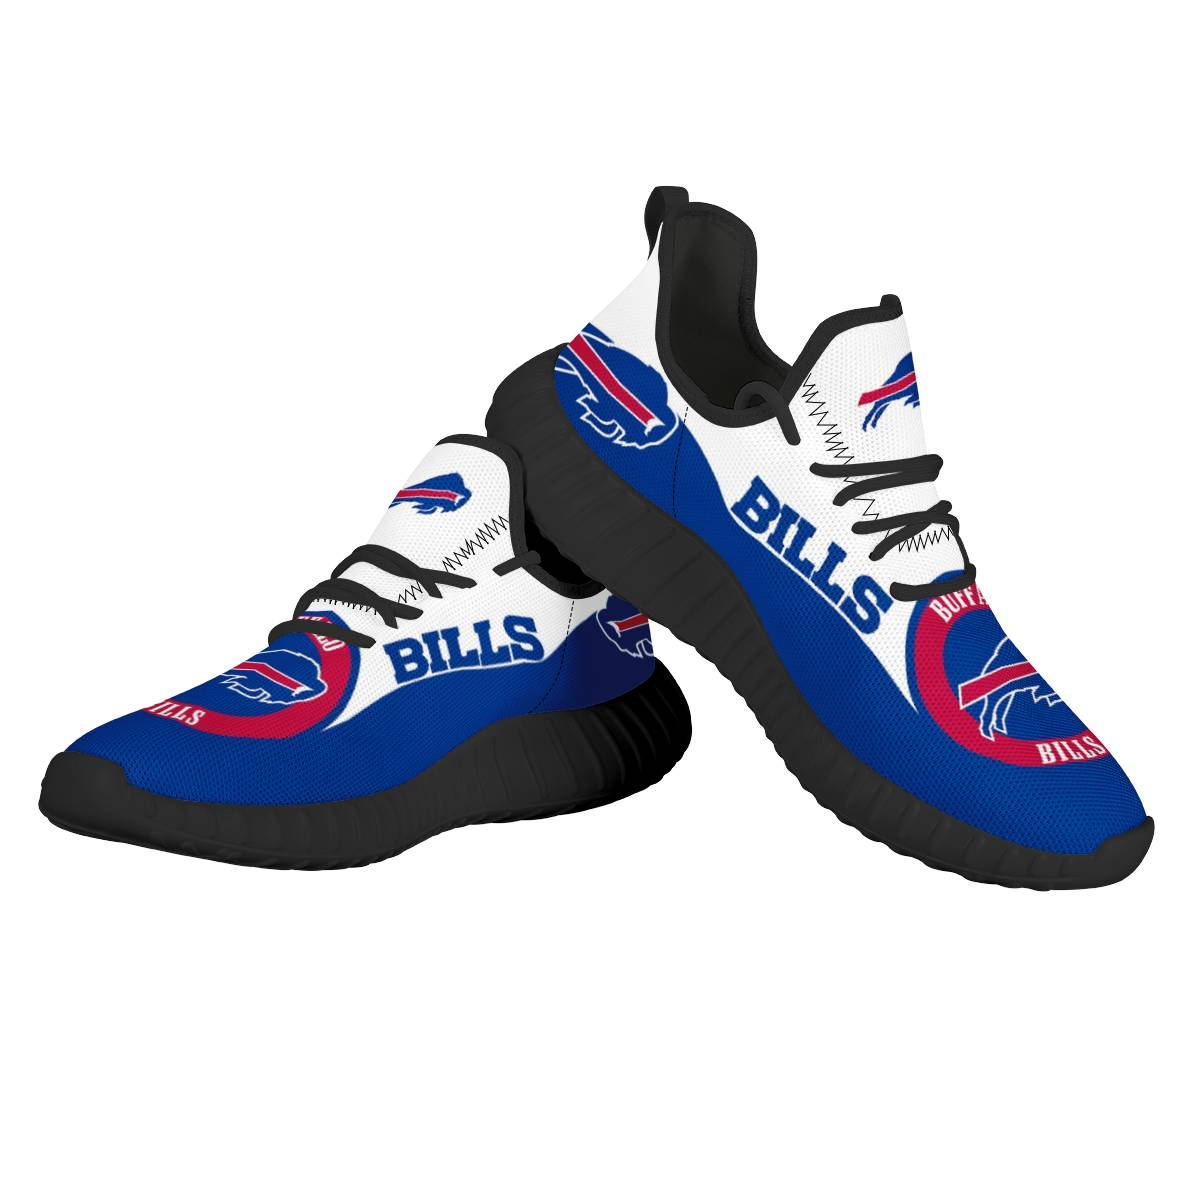 Women's Buffalo Bills Mesh Knit Sneakers/Shoes 005